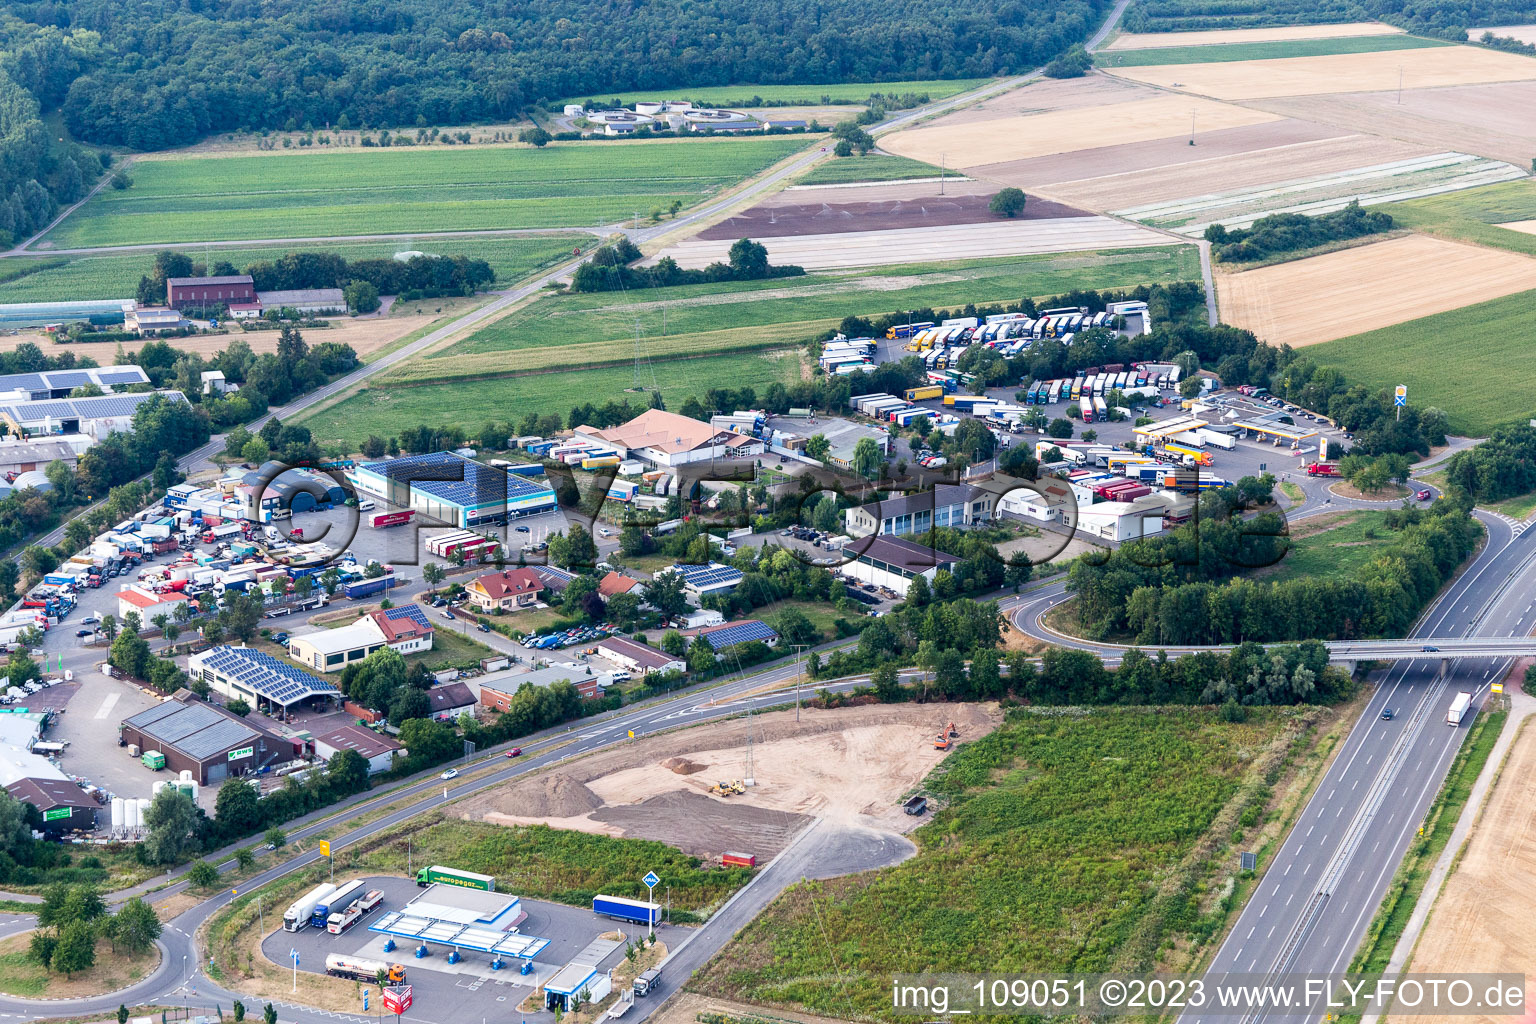 Schwegenheim dans le département Rhénanie-Palatinat, Allemagne depuis l'avion